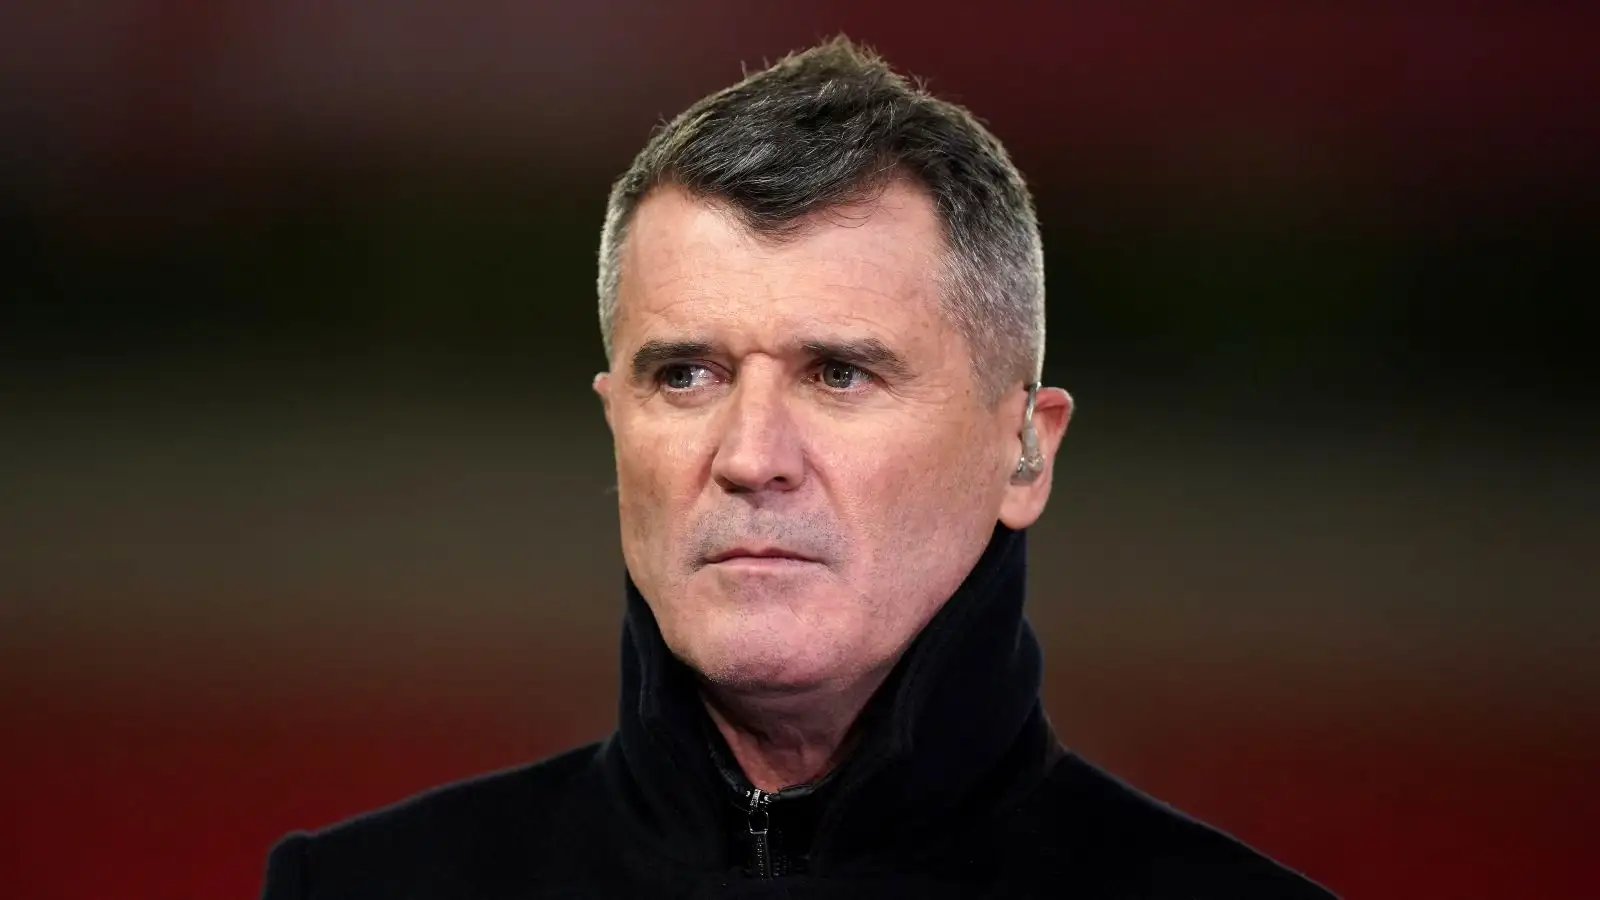 Man Utd legend Roy Keane looks annoyed